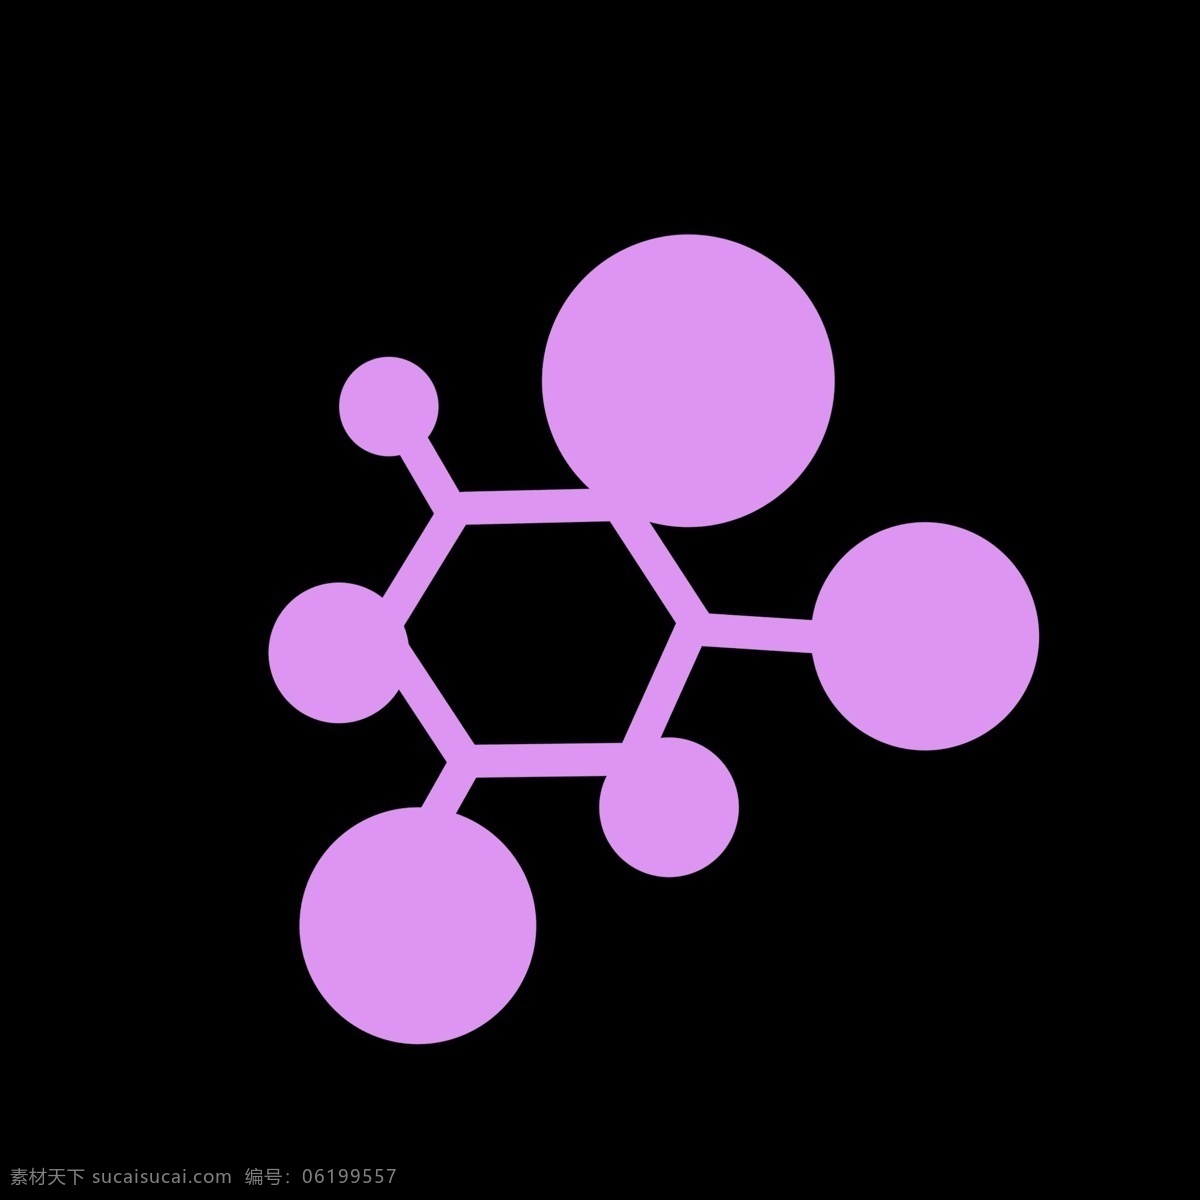 粉色 化学 分子 分解 图 因子分解图 化学分子 运动 活动 标识 学习化学内容 知识 科学 认知 水平 教育程度 理念